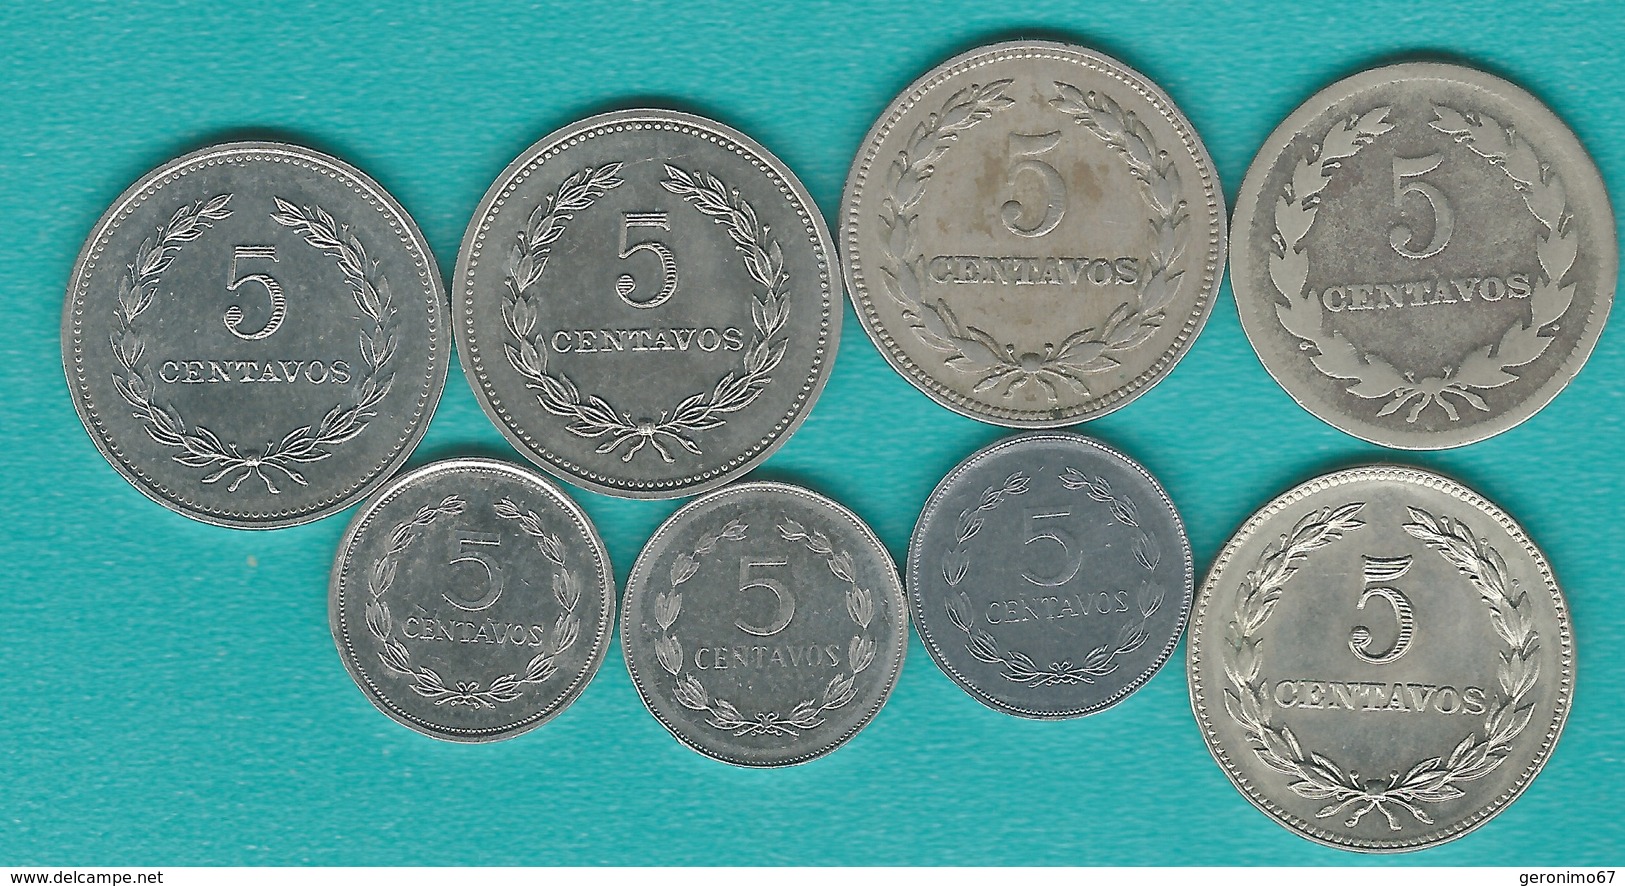 El Salvador - 5 Centavos X 8 - 1948 (KM134), 1956 (KM134a), 1975 (KM149), 1976 (KM149a), 1977 (KM149b), 1987 (KM154), 19 - Salvador